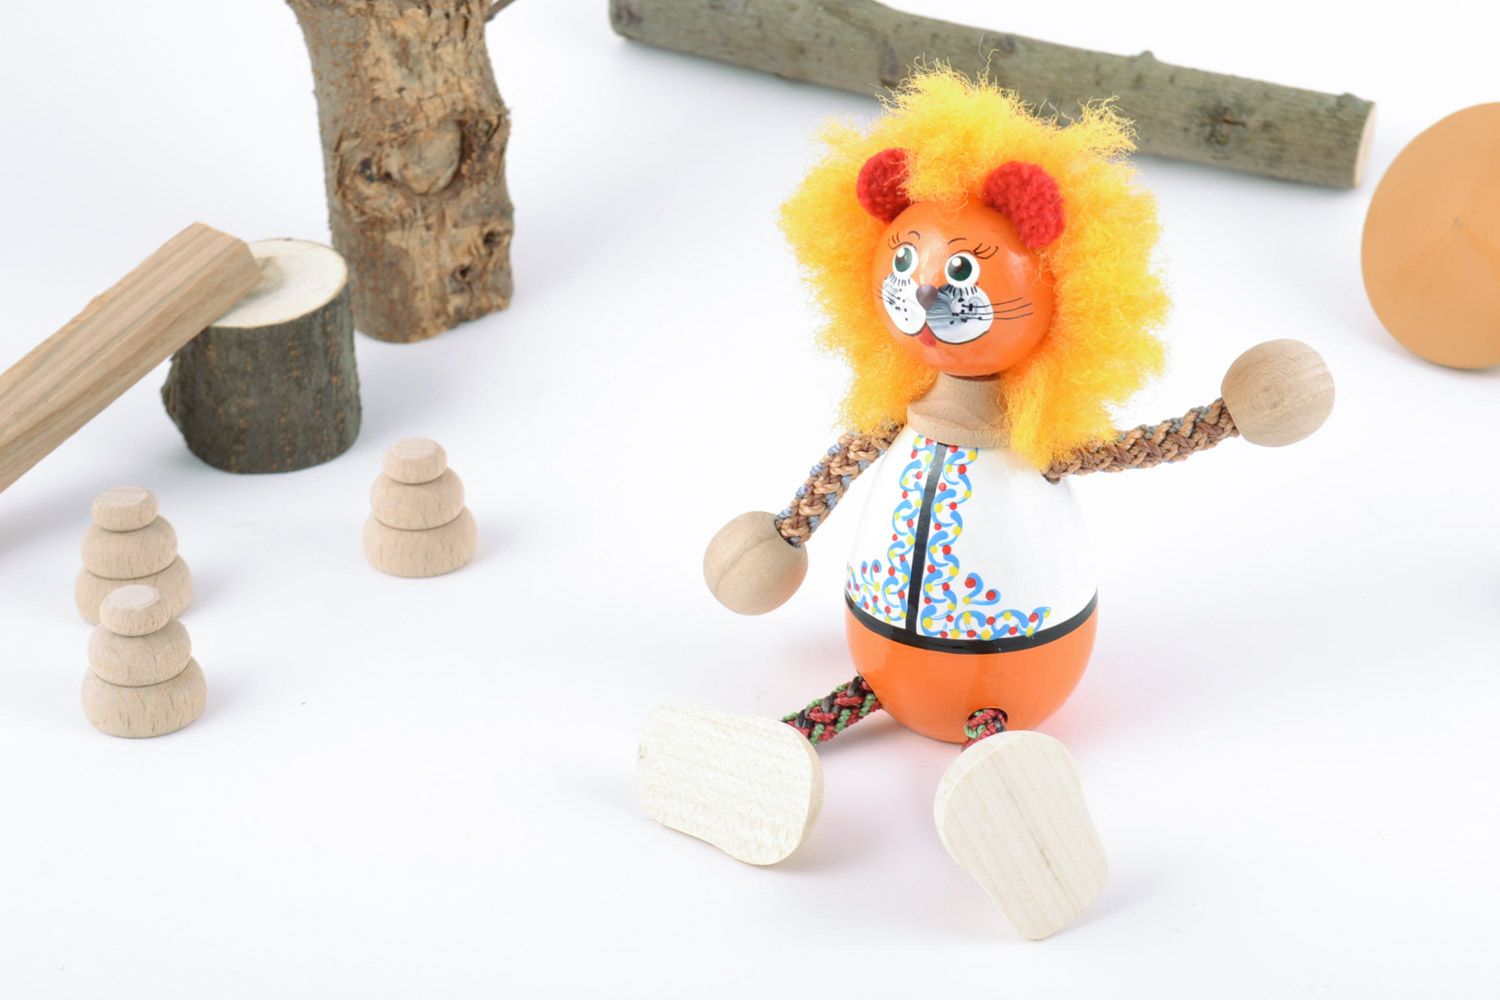 Jouet en bois original fait main peint figurine décorative pour enfant Lion photo 1